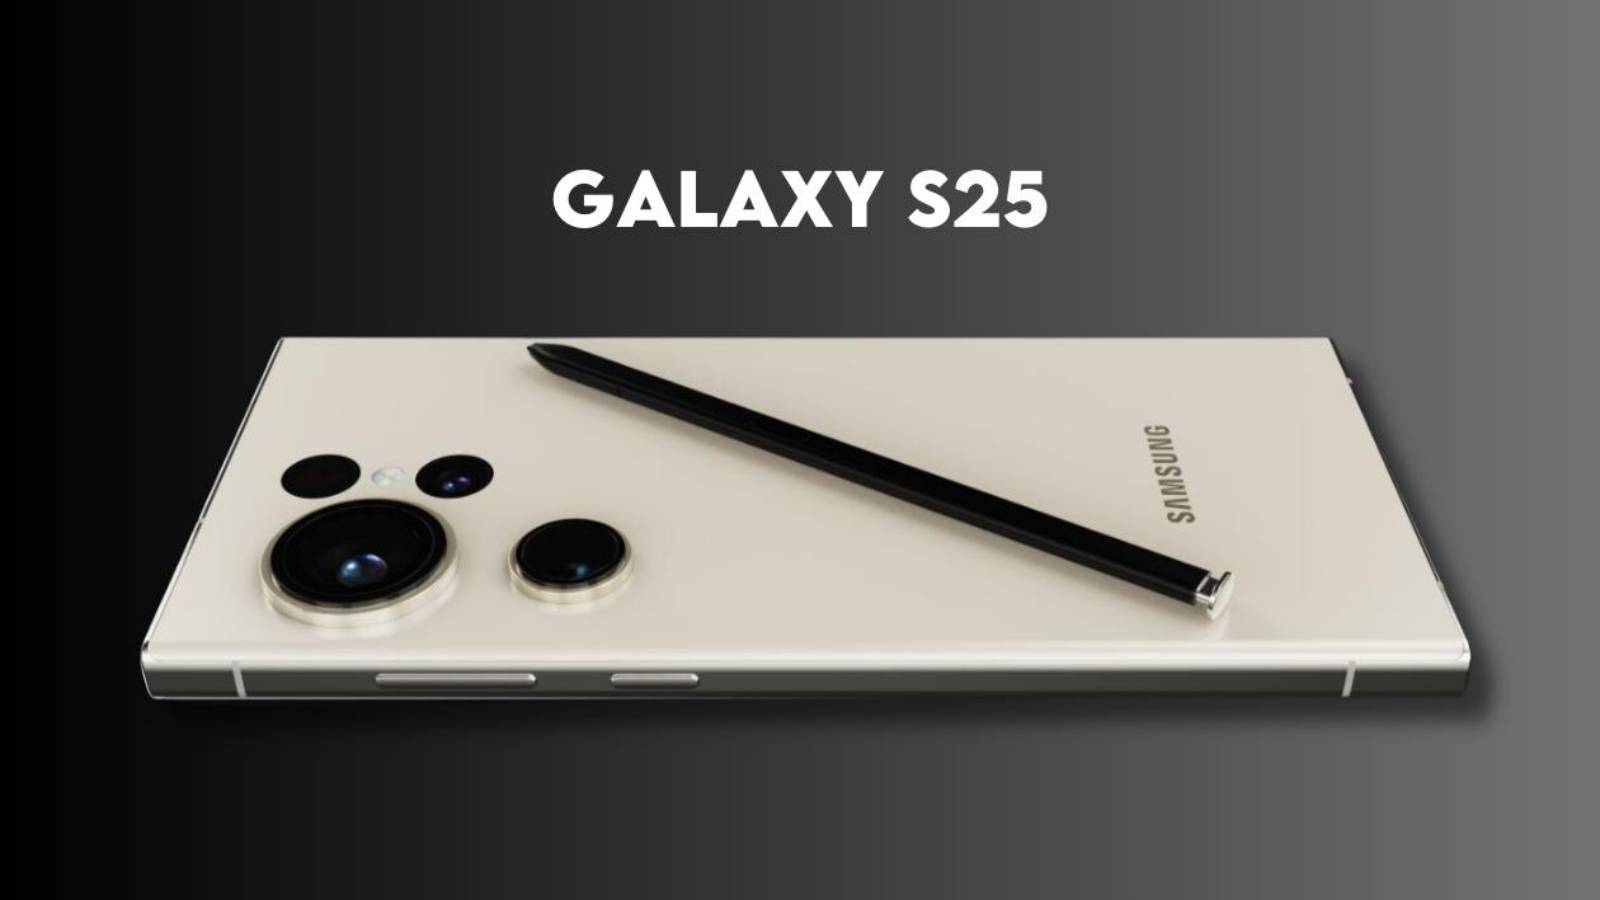 Samsung GALAXY S25 Le prime immagini rivelano il nuovo telefono MOSTRA